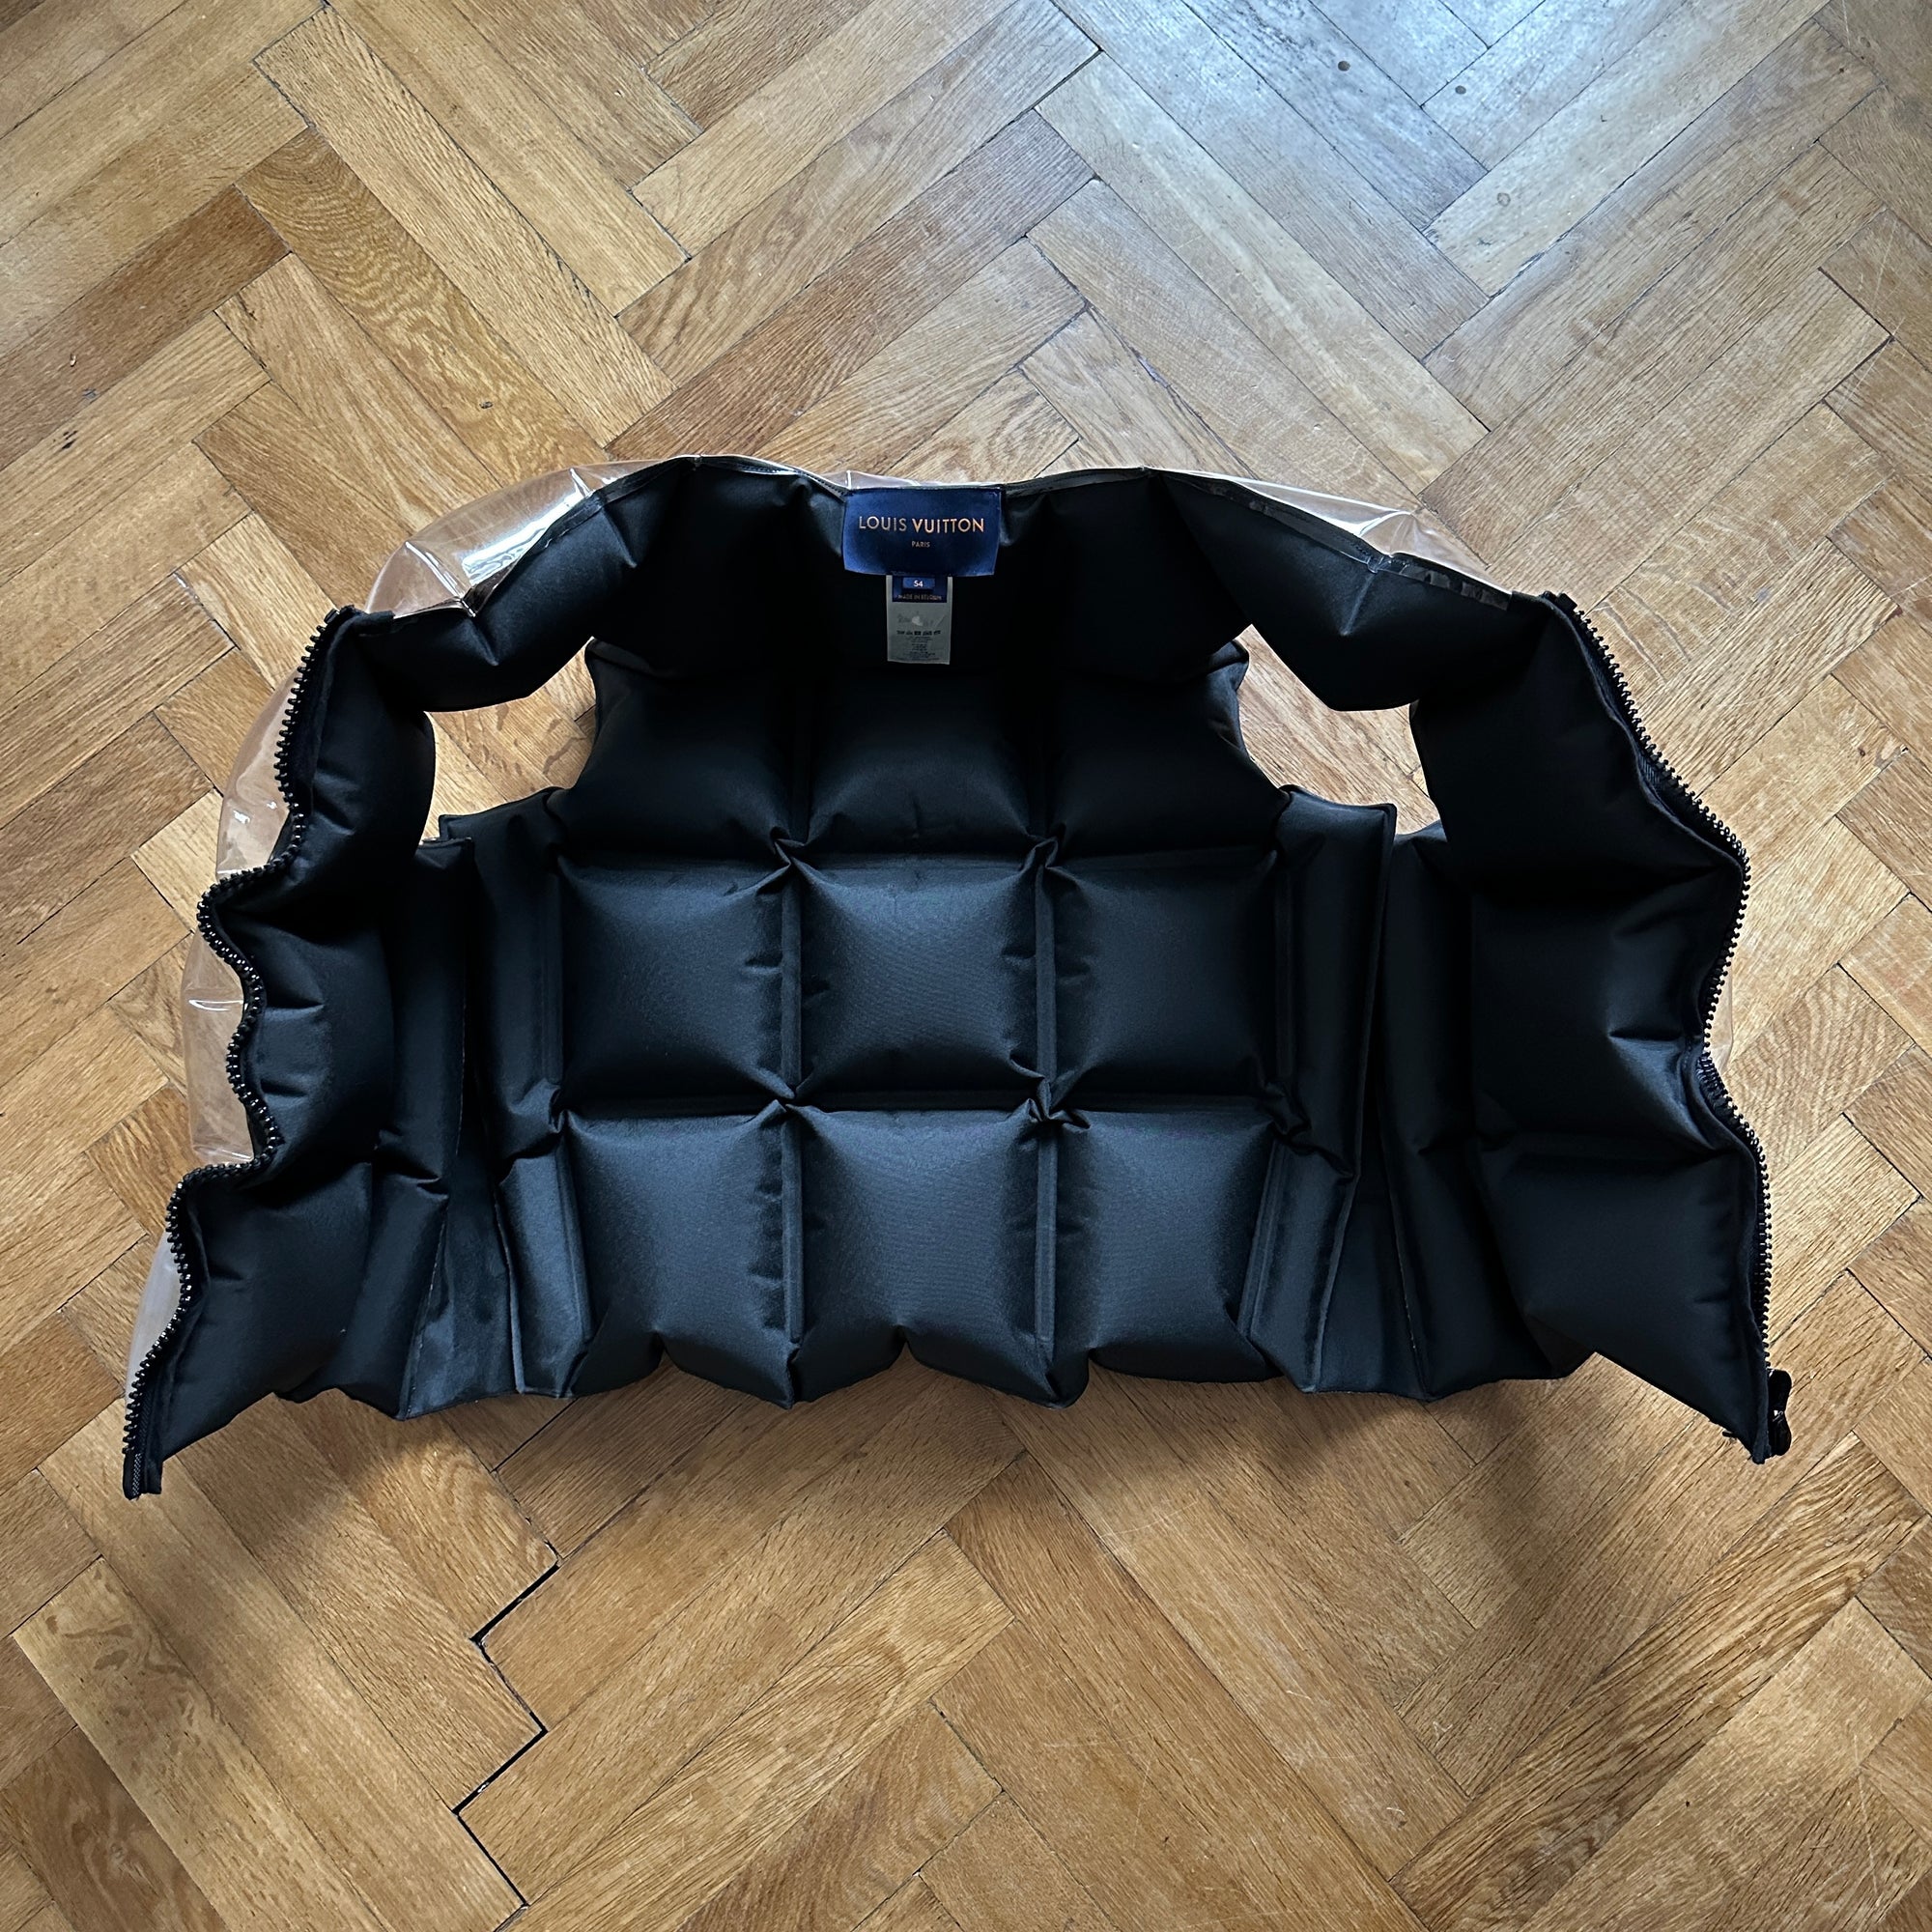 Louis Vuitton SS21 Monogram Inflatable Life Vest